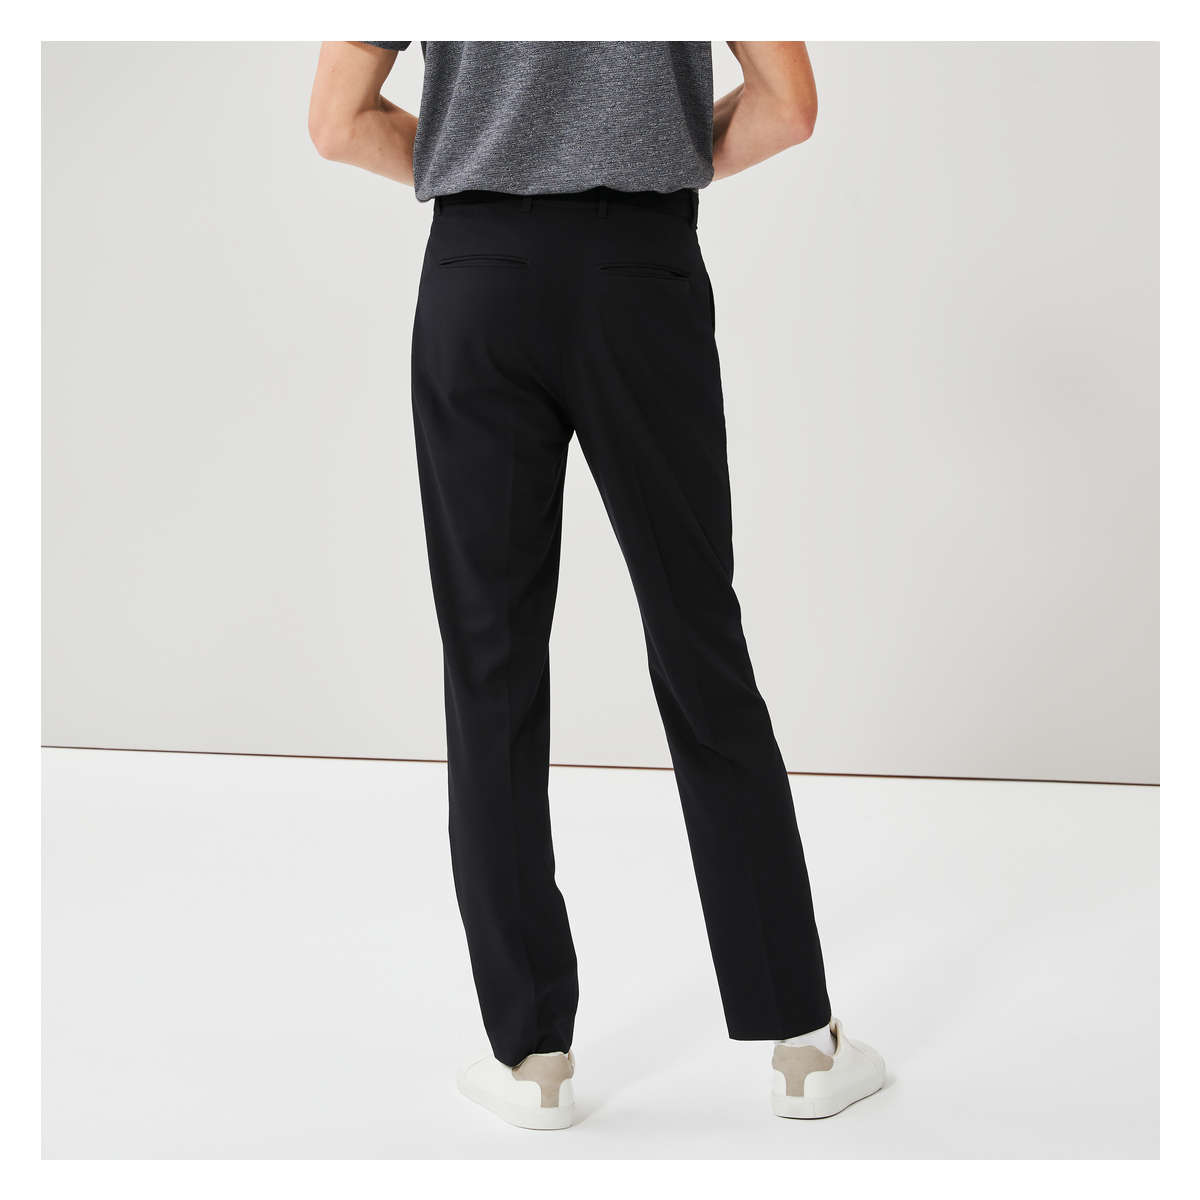  Commuter Pants For Men, Slim-Fit Mens Dress Pants, Machine  Washable, Wrinkle Resistant, Stretch Casual Pants Black W28-28L